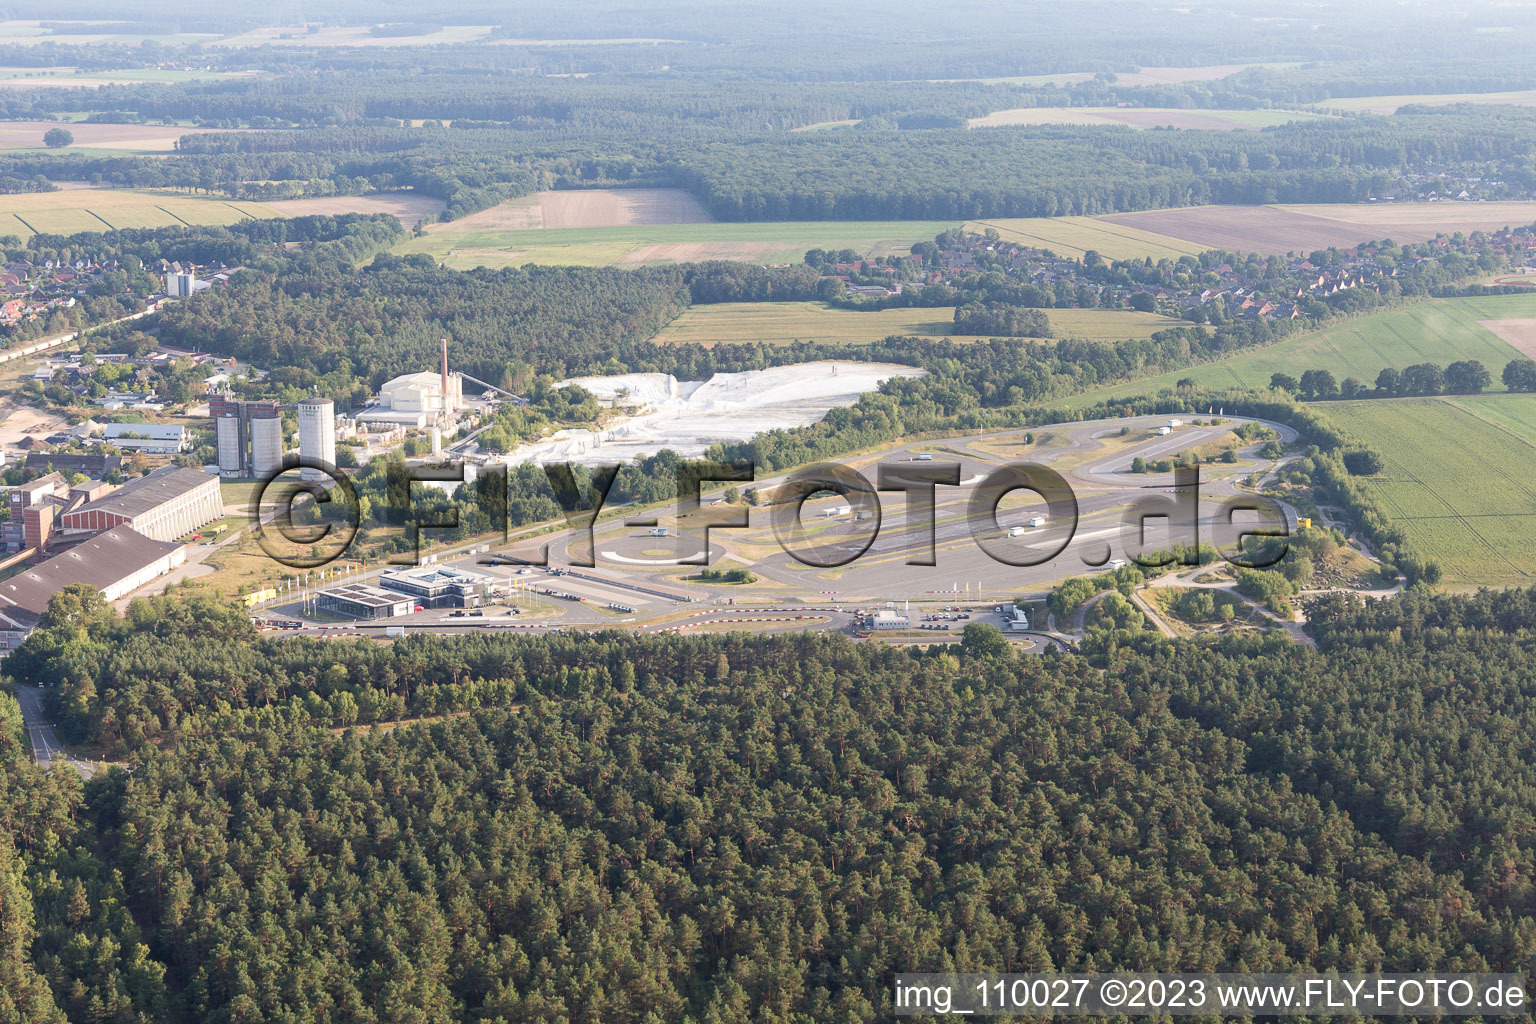 Vue aérienne de Voies asphaltées du centre de sécurité routière ADAC Hansa devant les décharges de gypse blanc de Gipswerk Embsen GmbH à Embsen dans le département Basse-Saxe, Allemagne